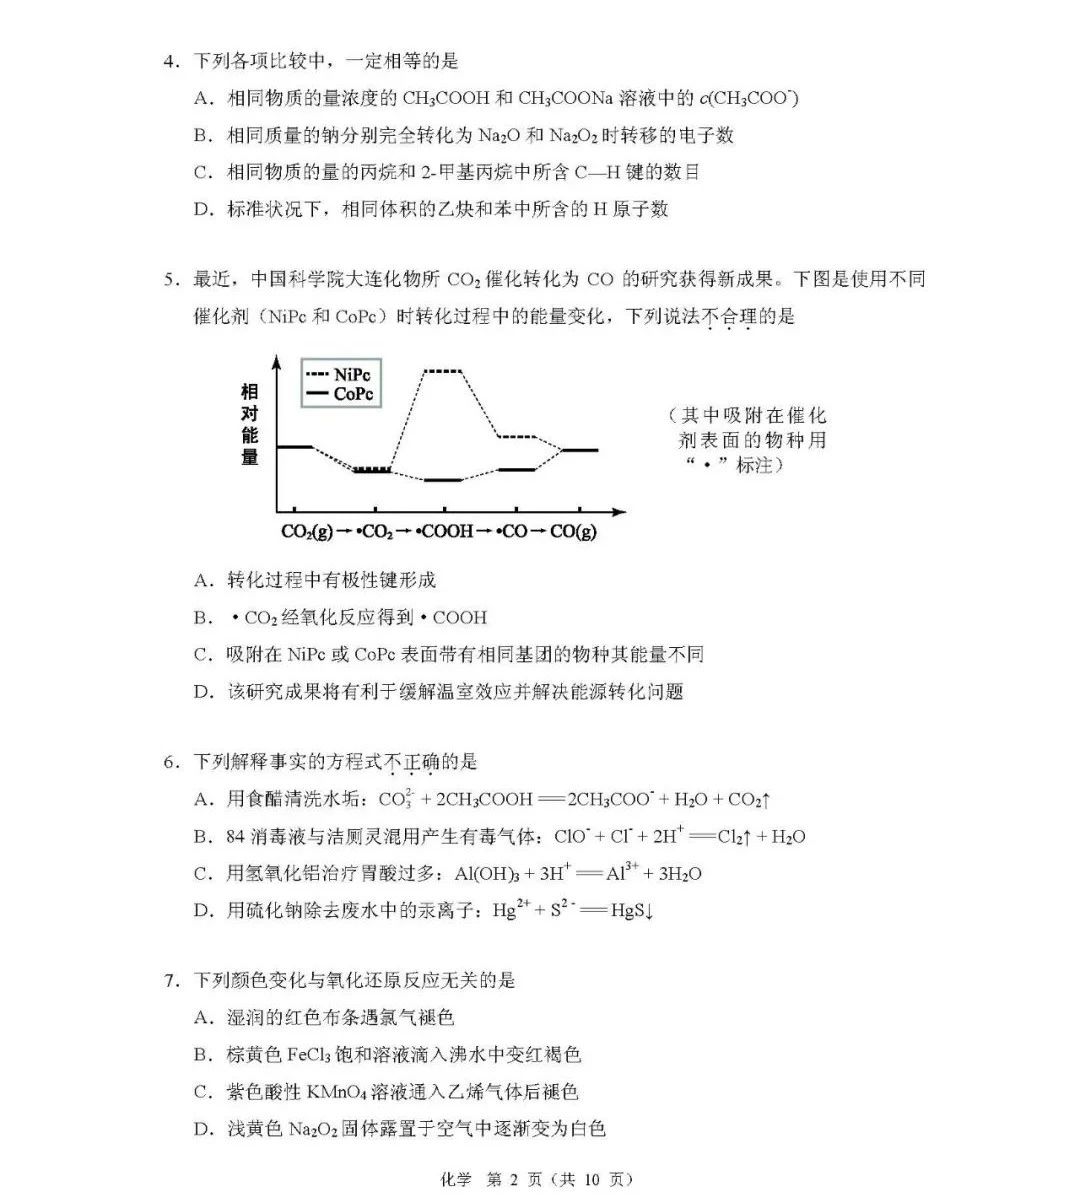 高考在线网课转发北京2020年高考适应性考试物理化学全科试卷及答案